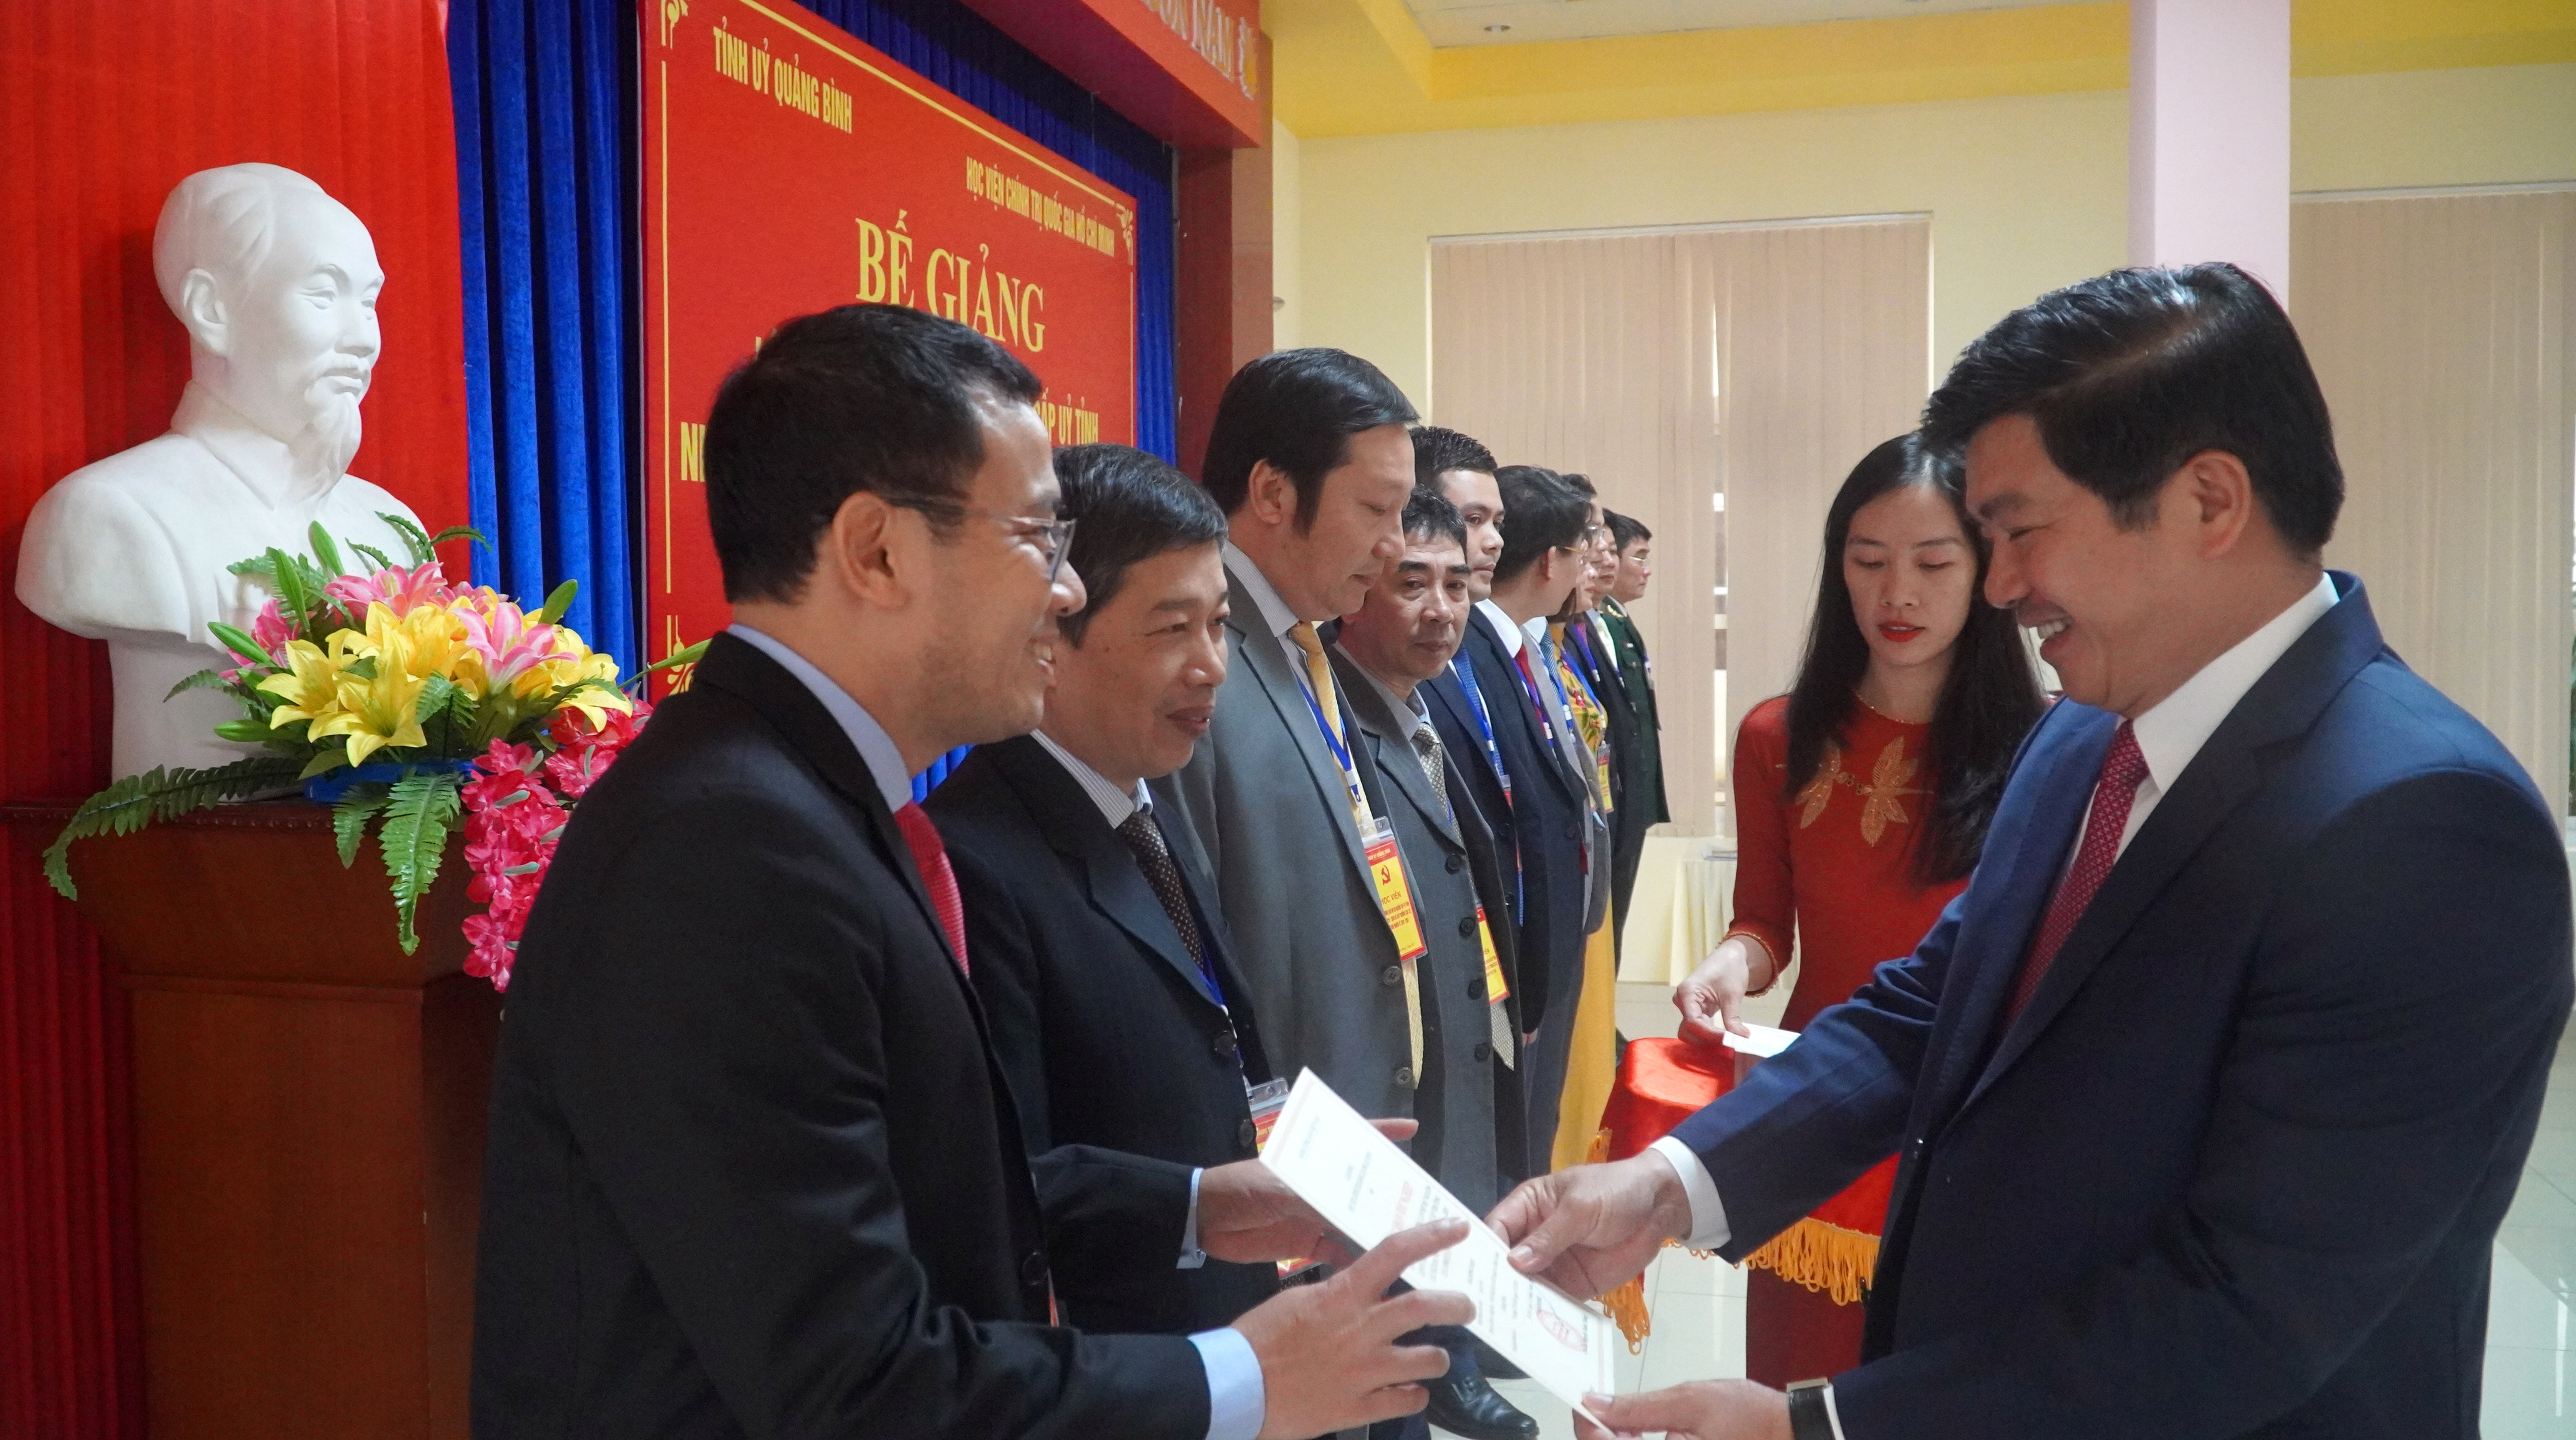 Đồng chí Trưởng ban Tổ chức Tỉnh ủy Trần Vũ Khiêm trao giấy chứng nhận cho các học viên lớp cán bộ dự nguồn cấp ủy tỉnh nhiệm kỳ 2025-2030, cấp trưởng các sở, ban, ngành nhiệm kỳ 2026-2031.